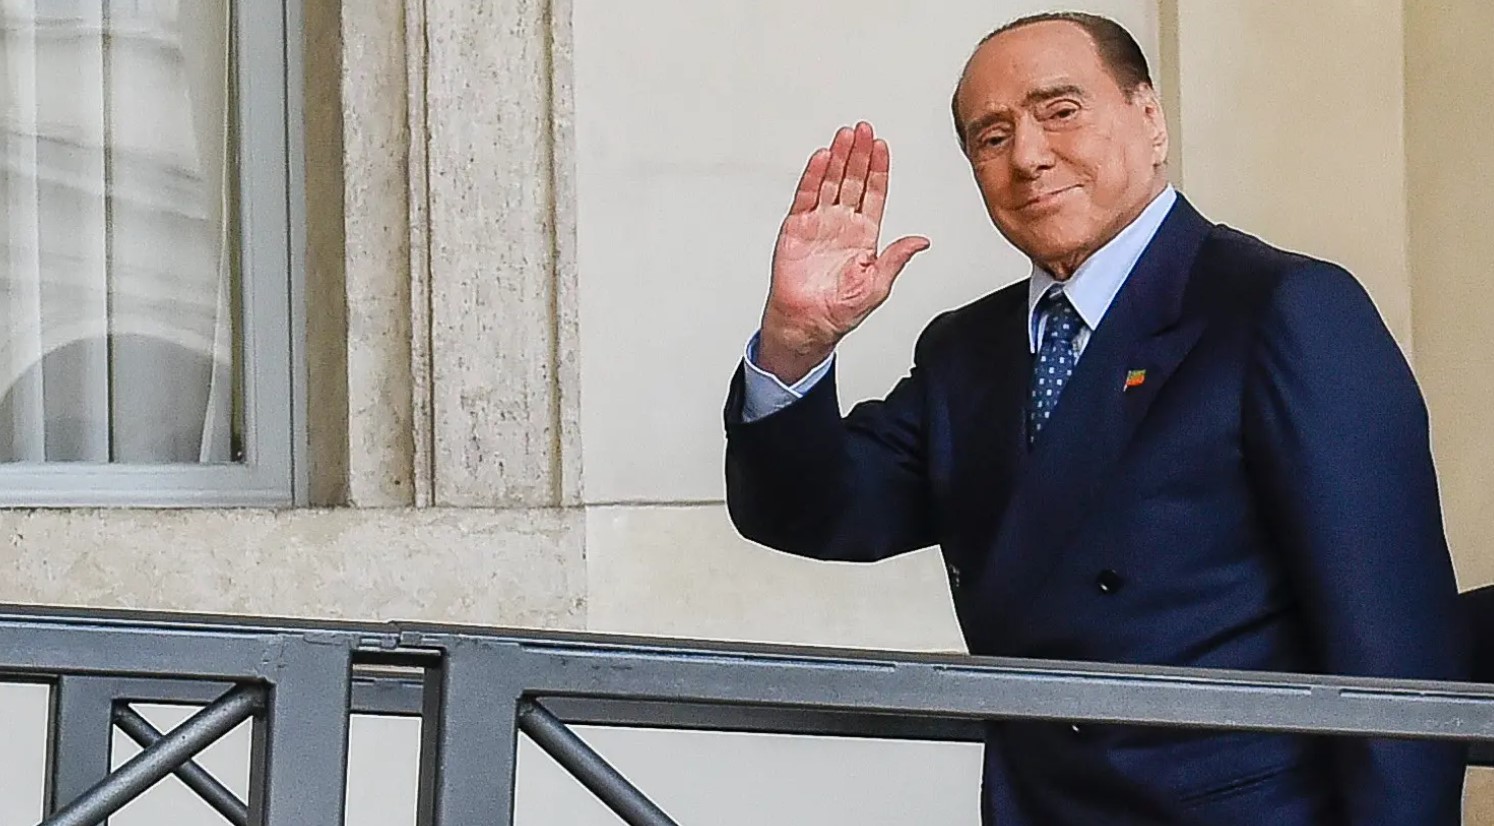 Le ultime notizie su Berlusconi ricoverato in ospedale per problemi cardiaci e respiratori